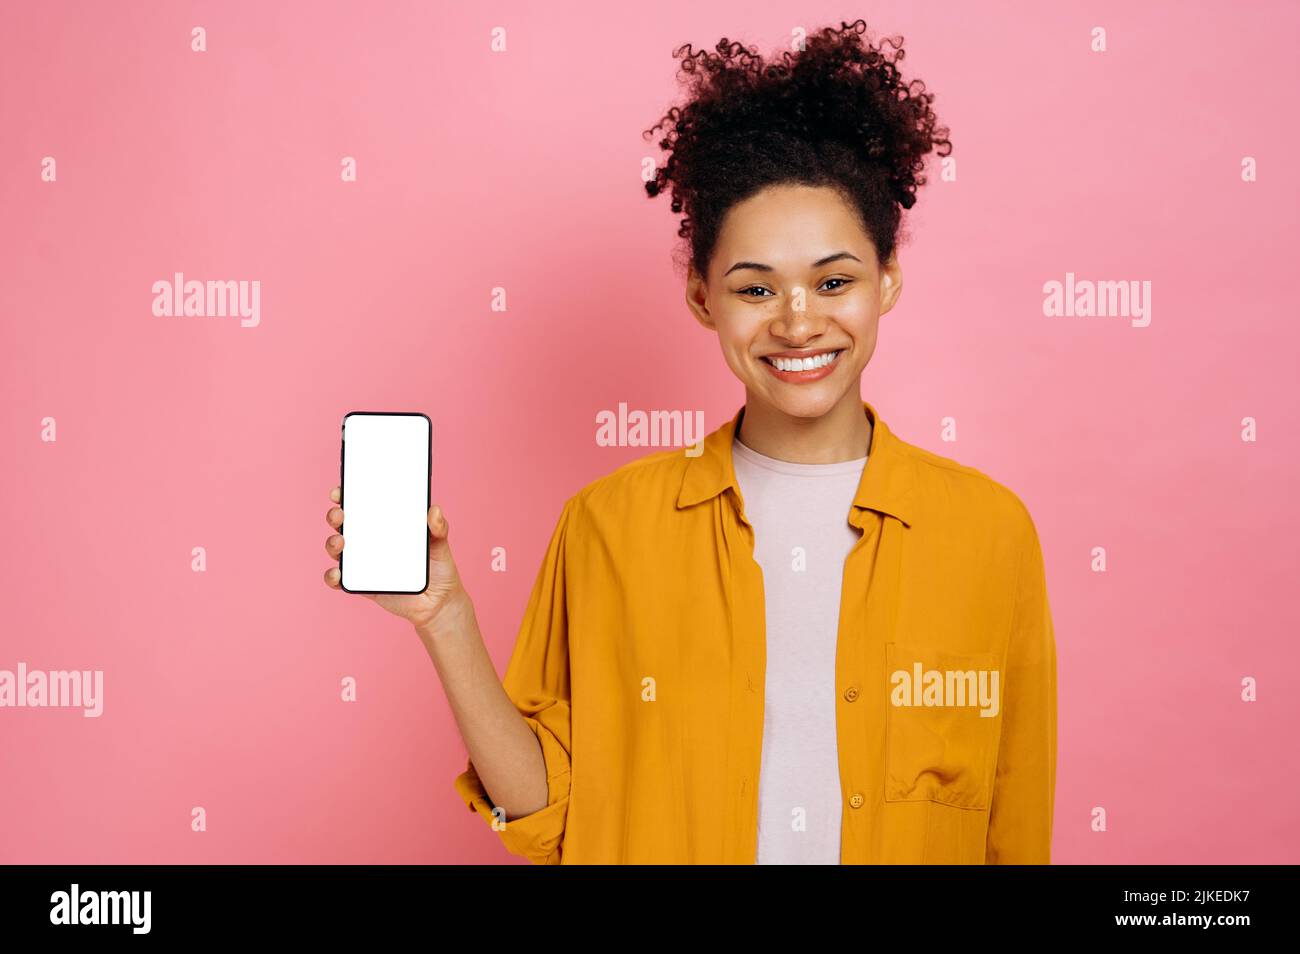 Positive schöne afroamerikanische junge Frau mit lockigem Haar, Mobiltelefon mit leerem weißen Bildschirm in der Hand haltend, Kopierraum für Werbung, freundlich lächelnd, stehend über einem isolierten rosa Hintergrund Stockfoto